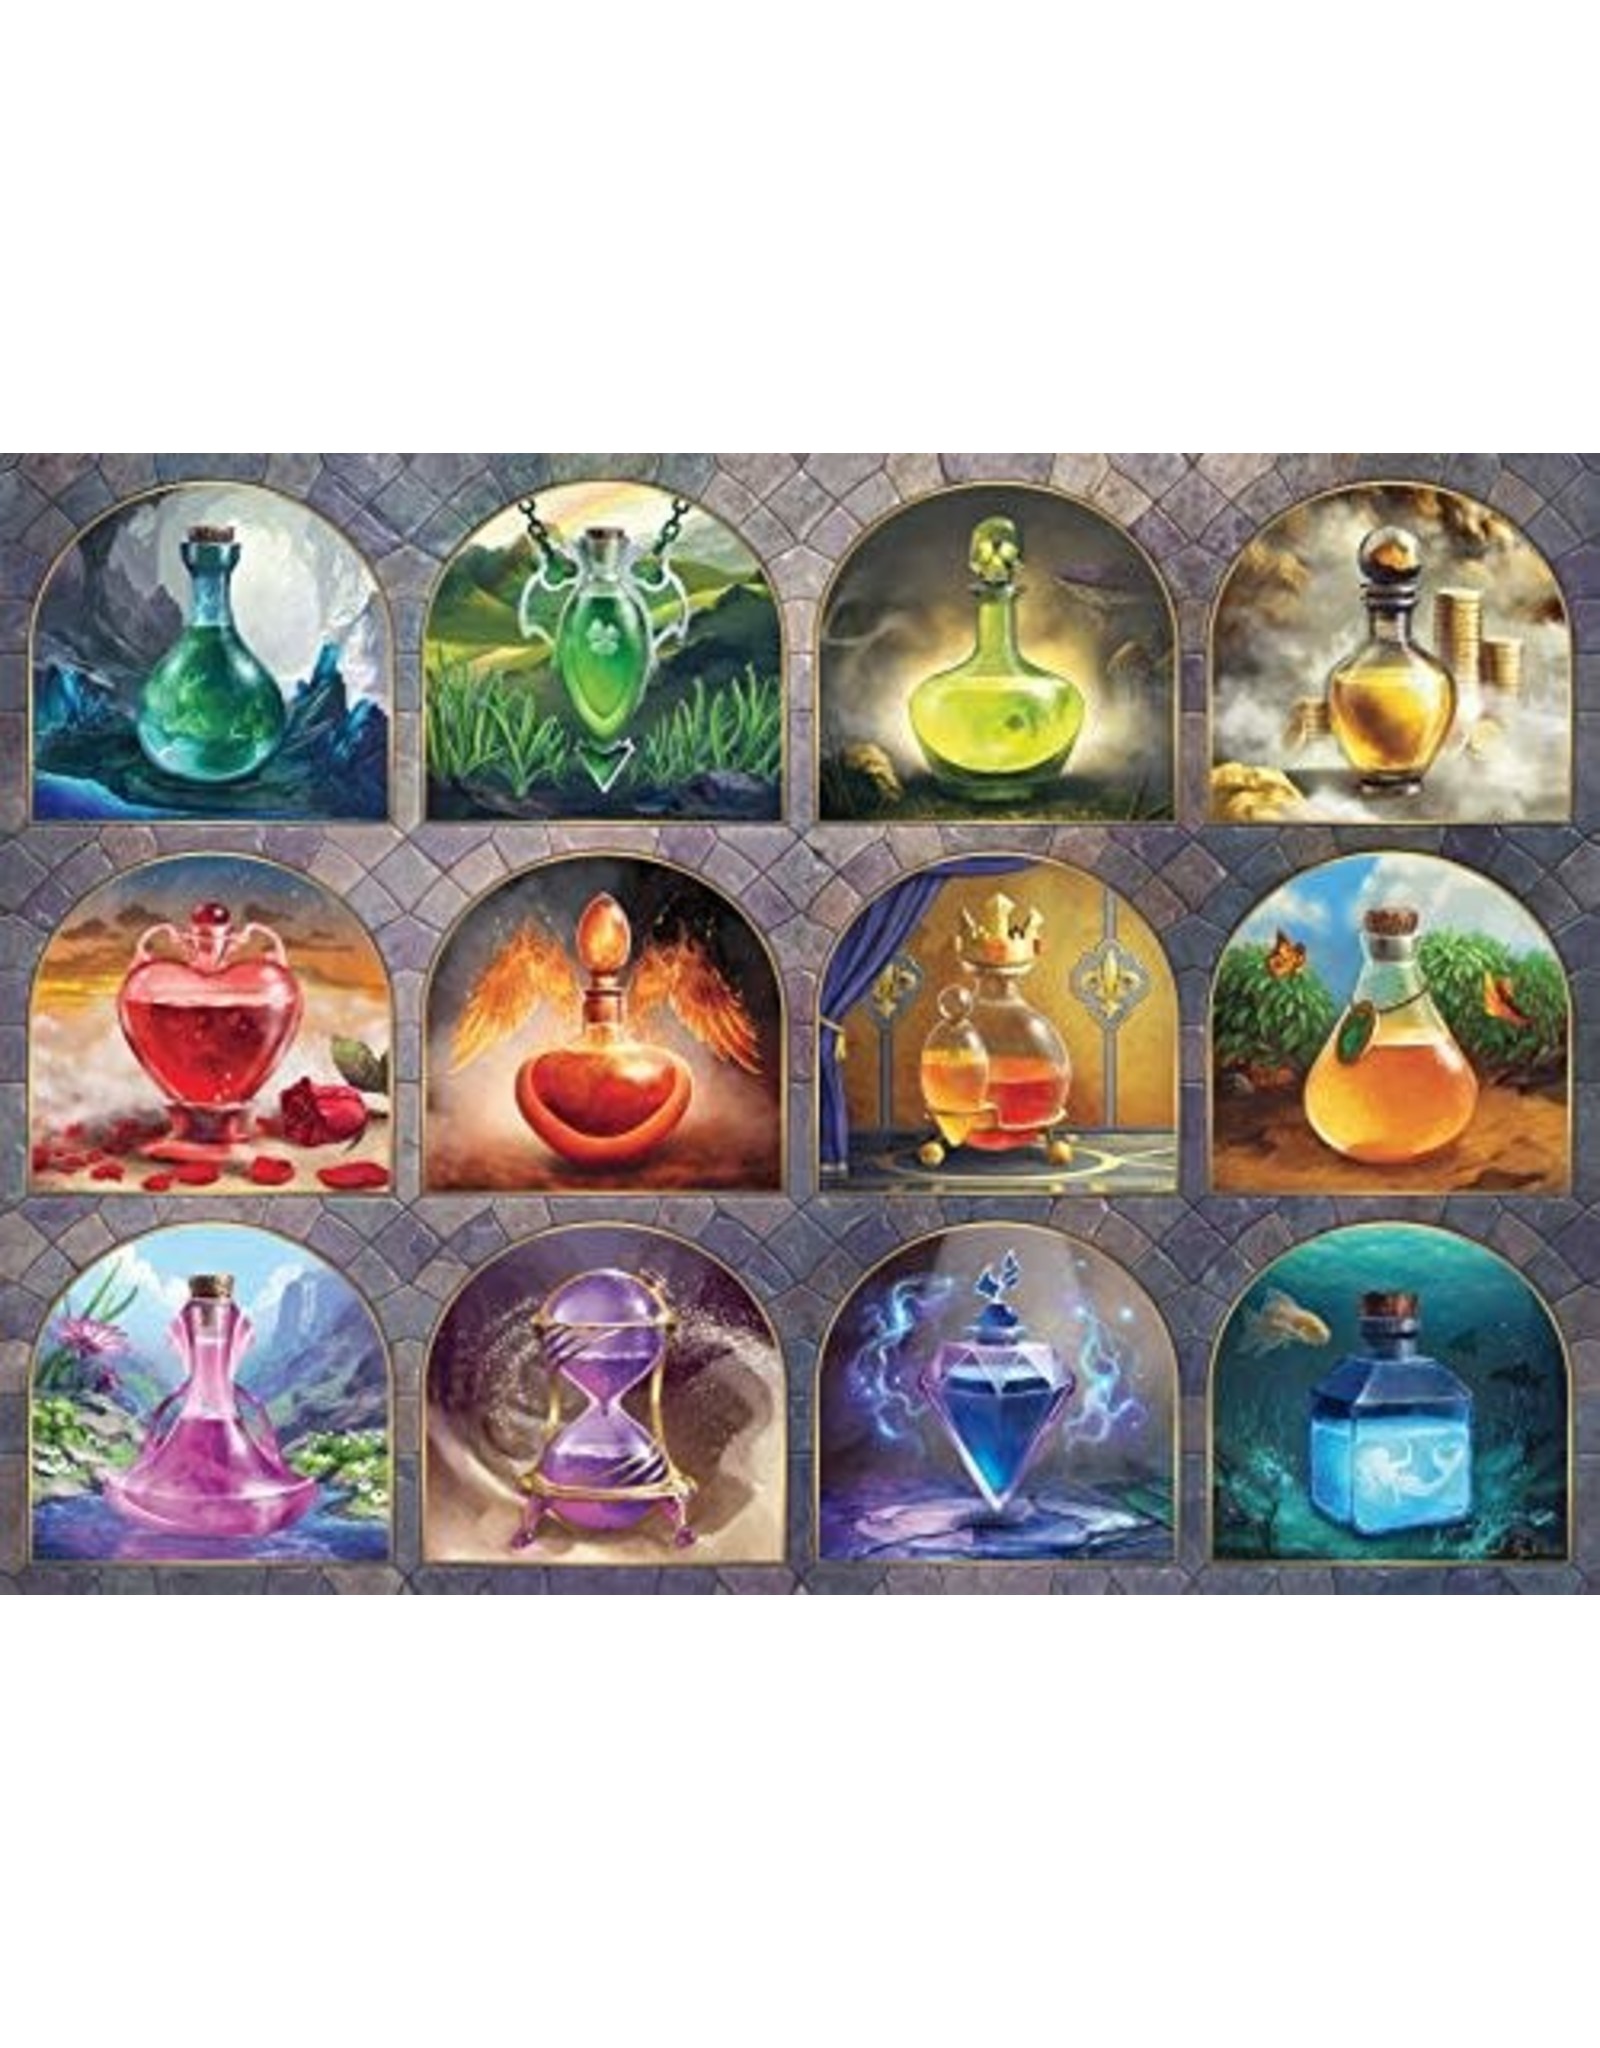 Ravensburger Magical Potions 1000 Piece Puzzle